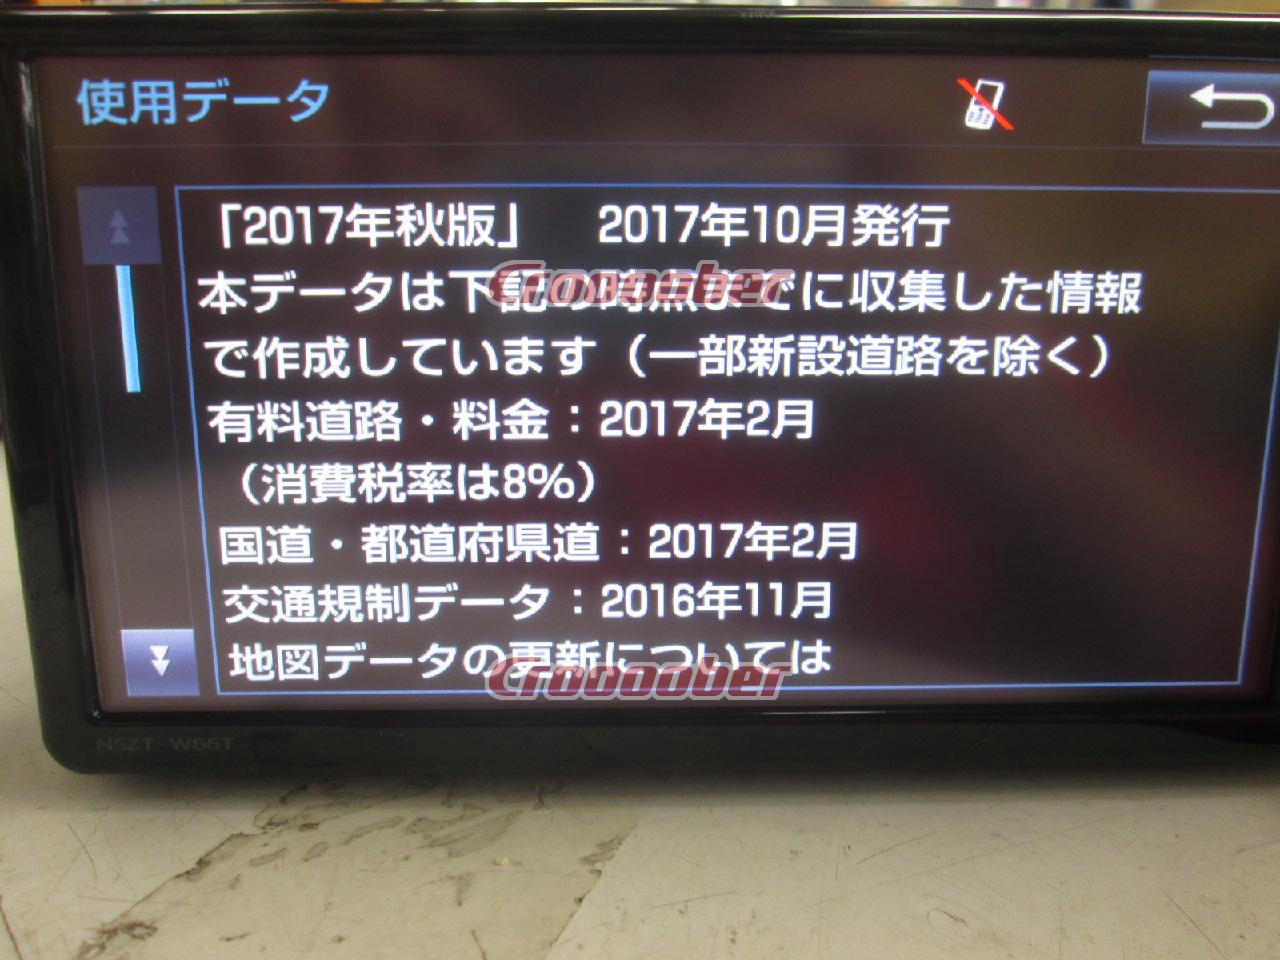 トヨタ純正(TOYOTA) NSZT-W66T ☆CD→SDに録音可能!!☆ | カーナビ(地